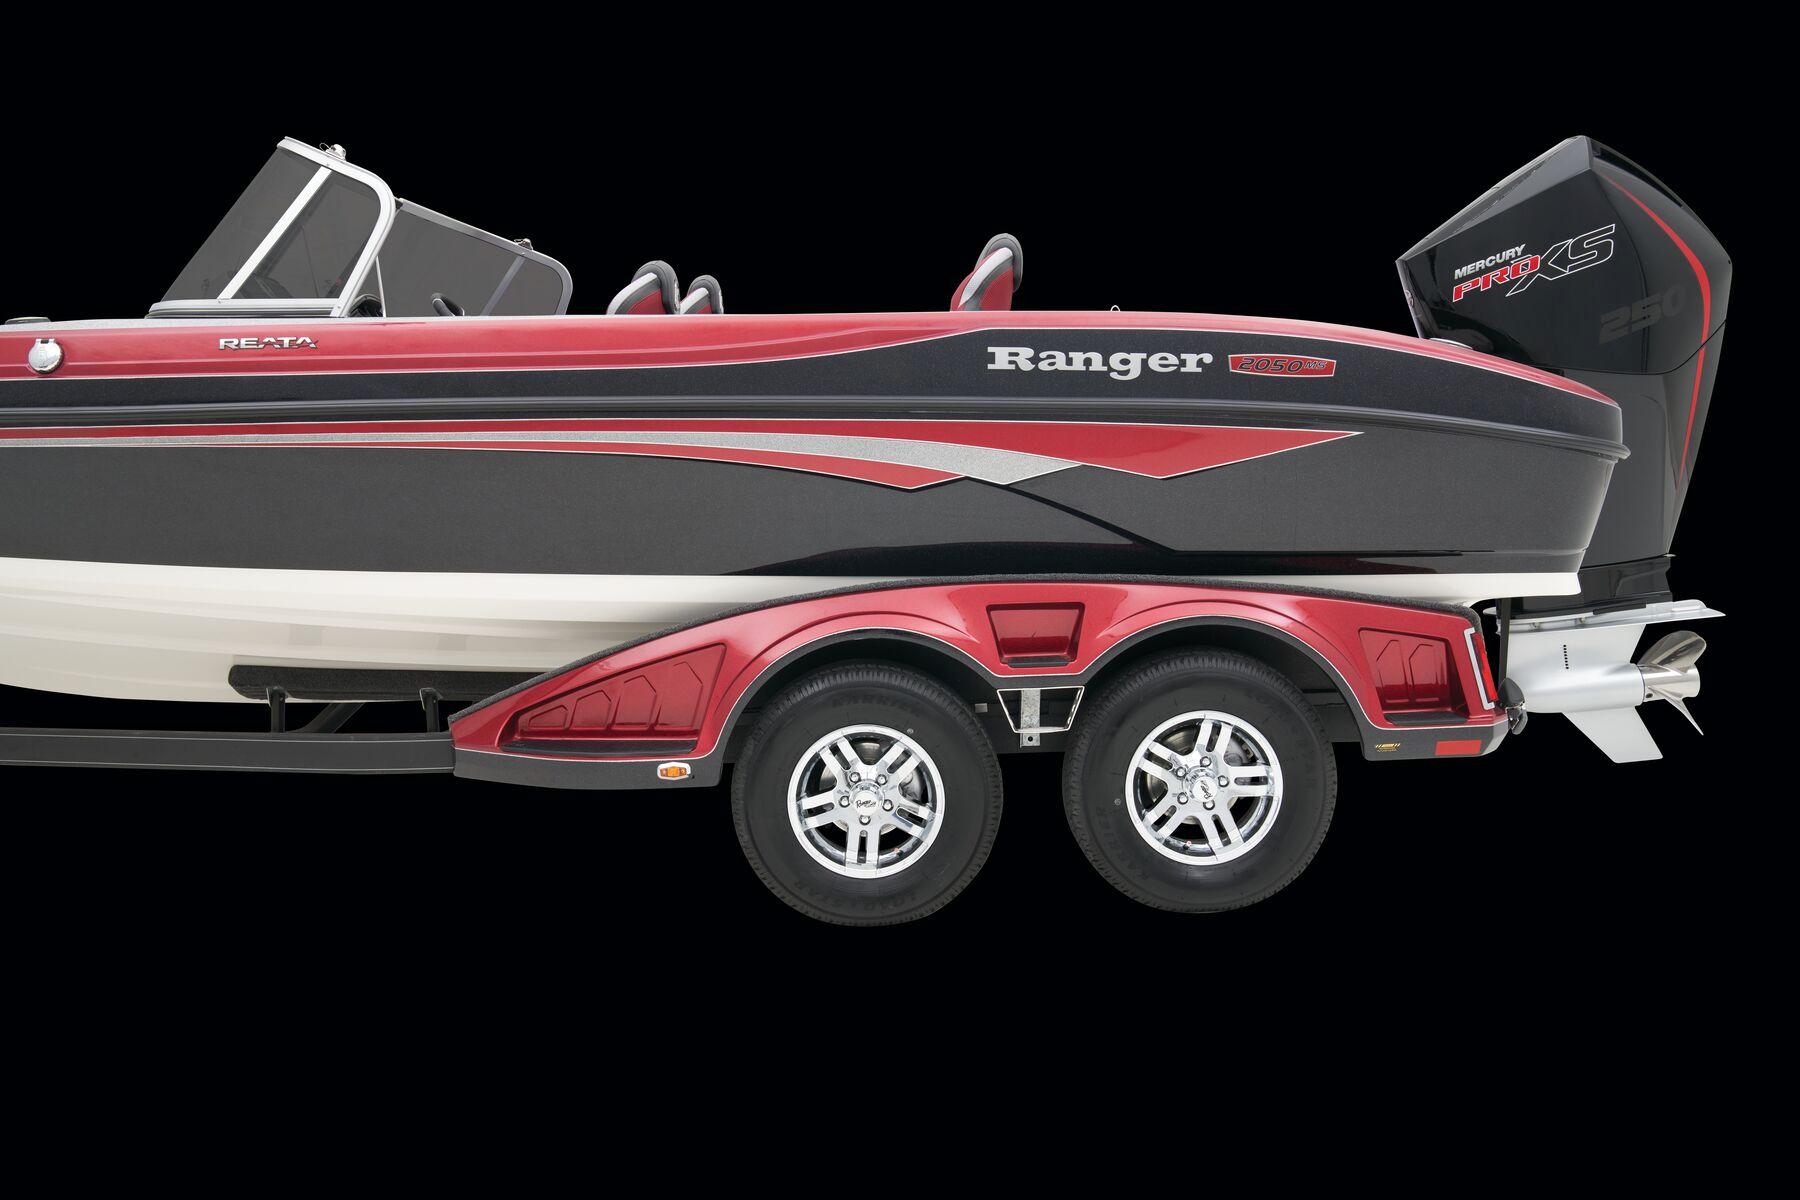 Ranger 2050MS